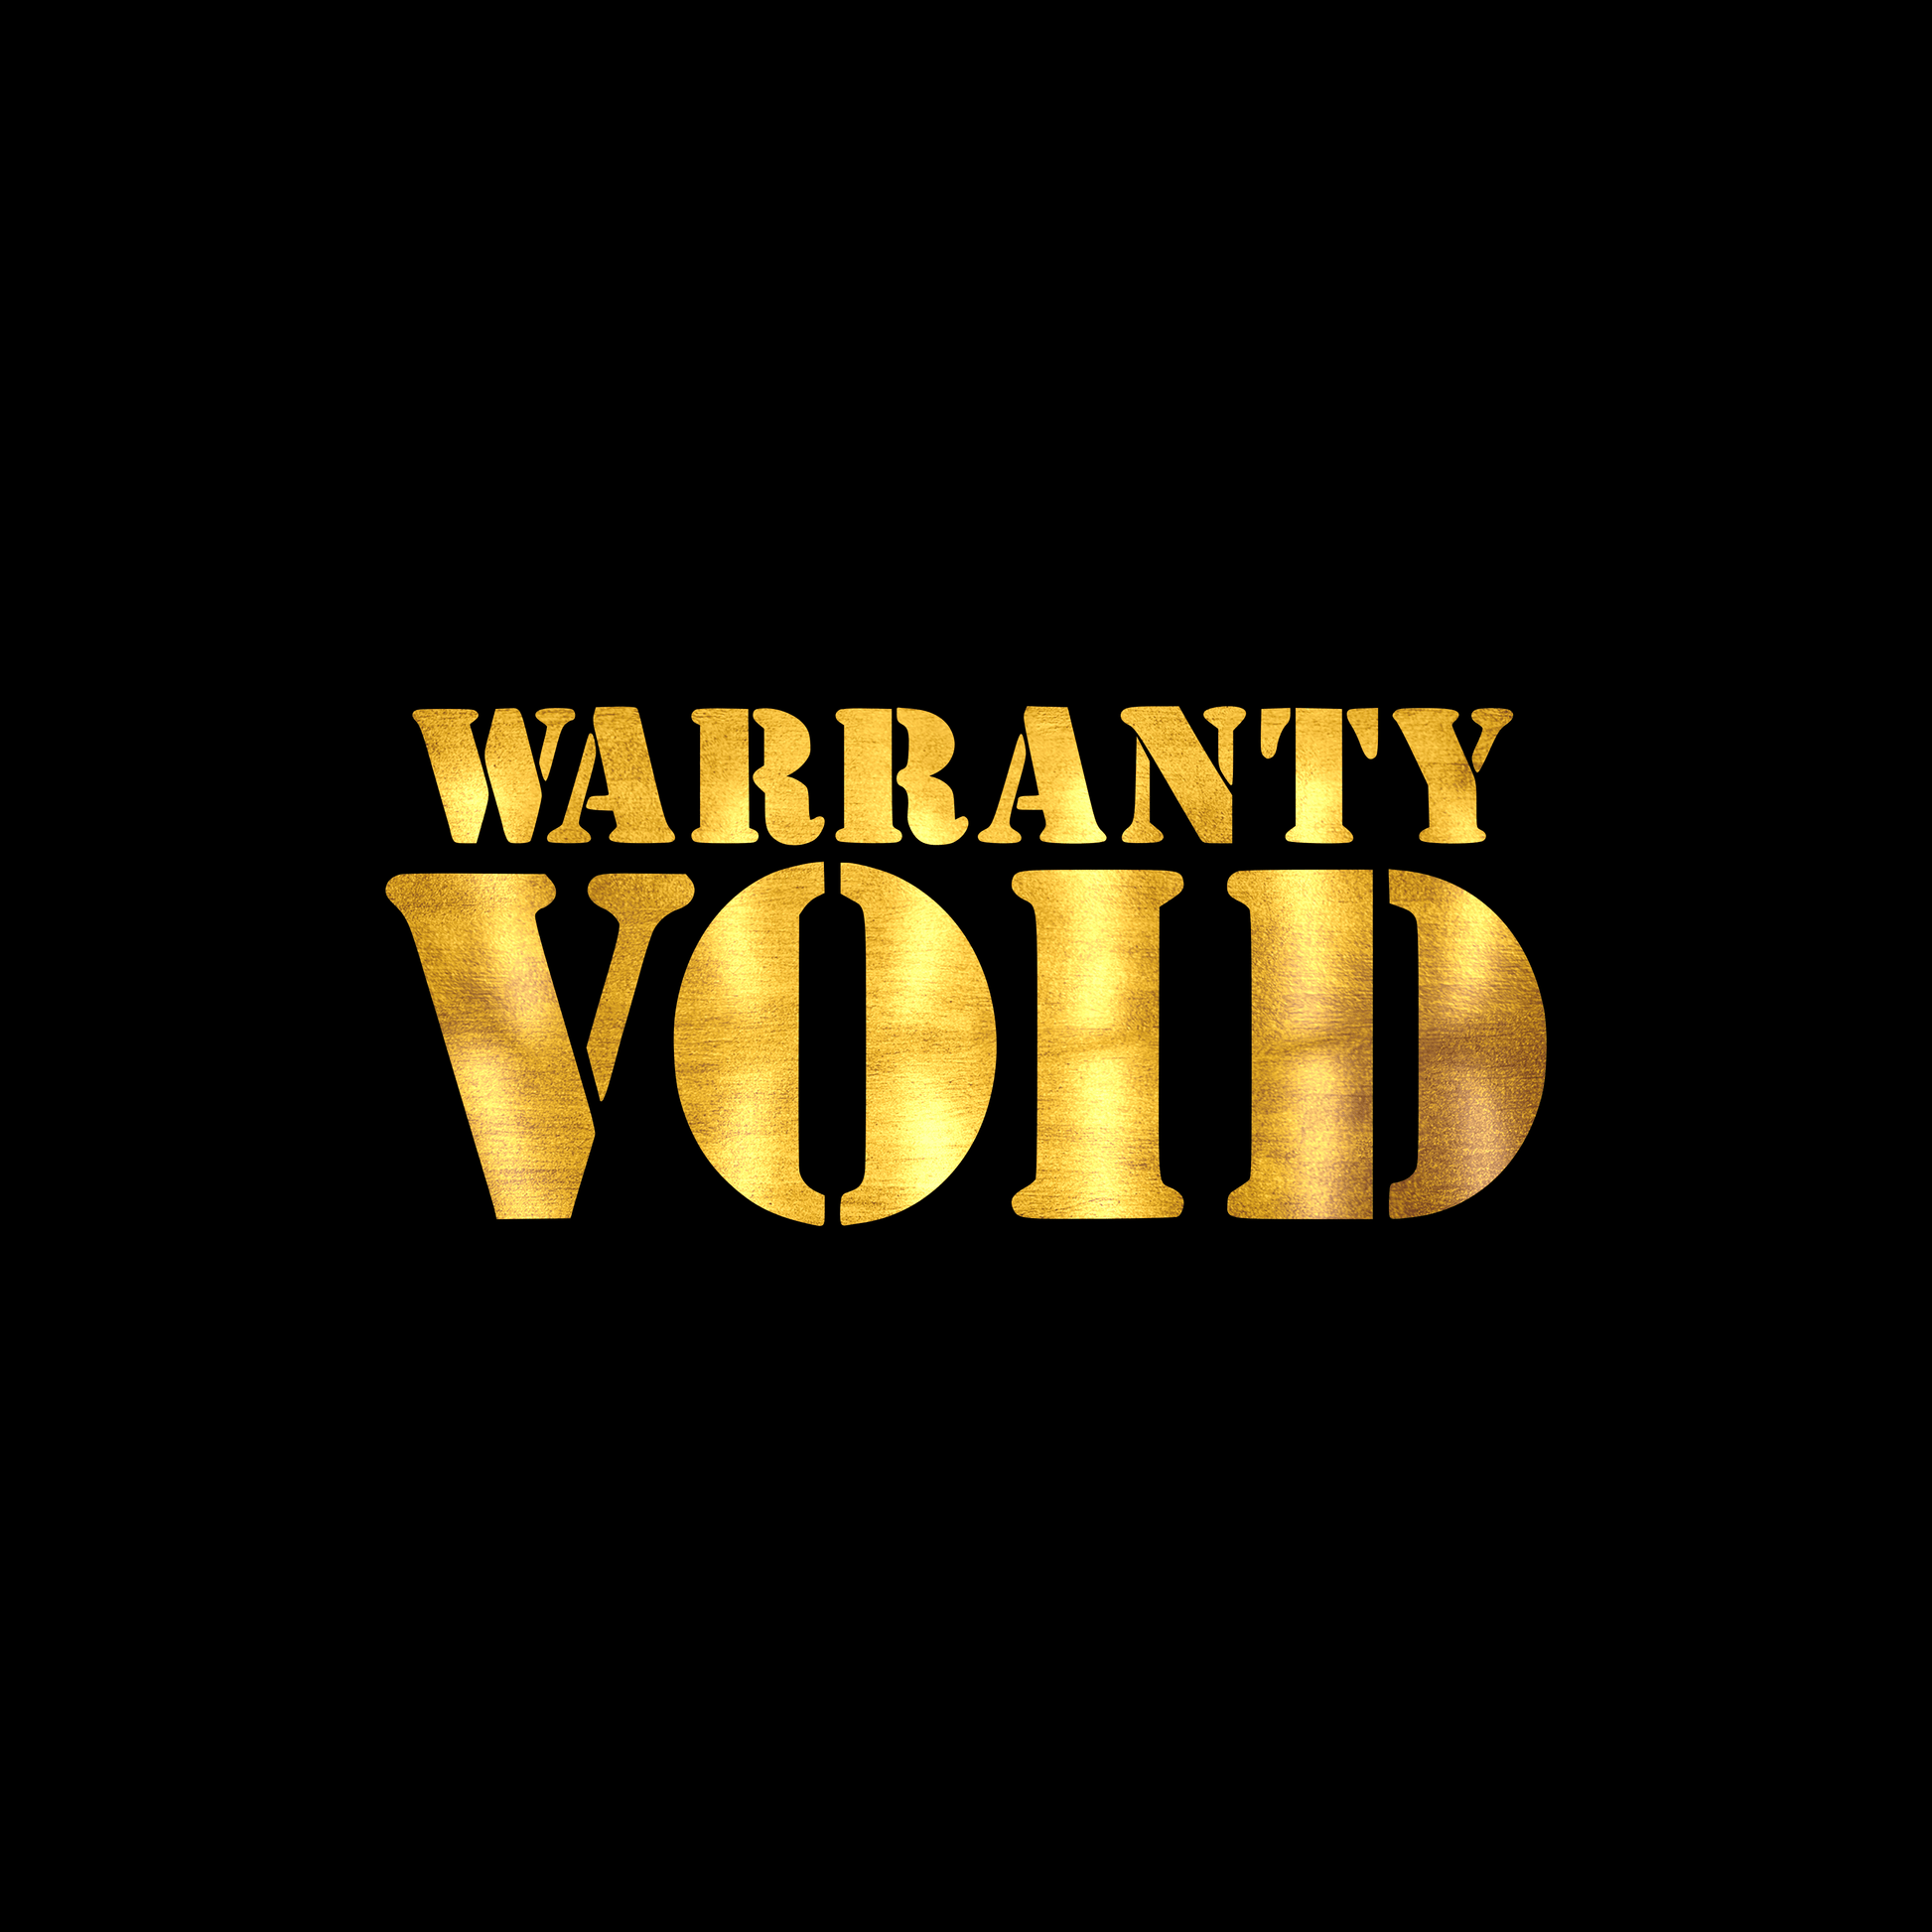 Warranty void sticker decal